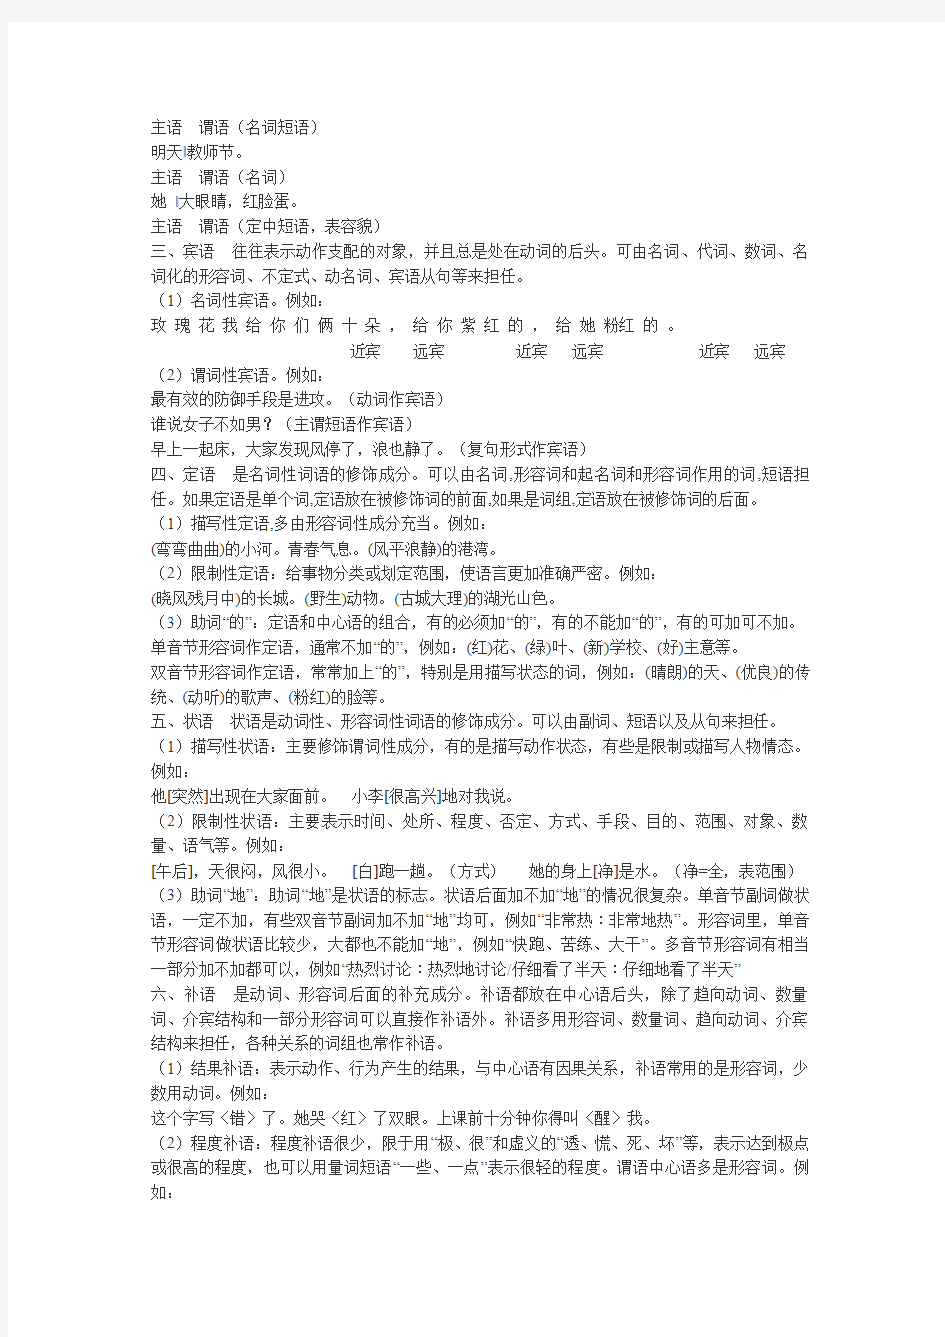 现代汉语句子成分分析从句法结构的关系及练习